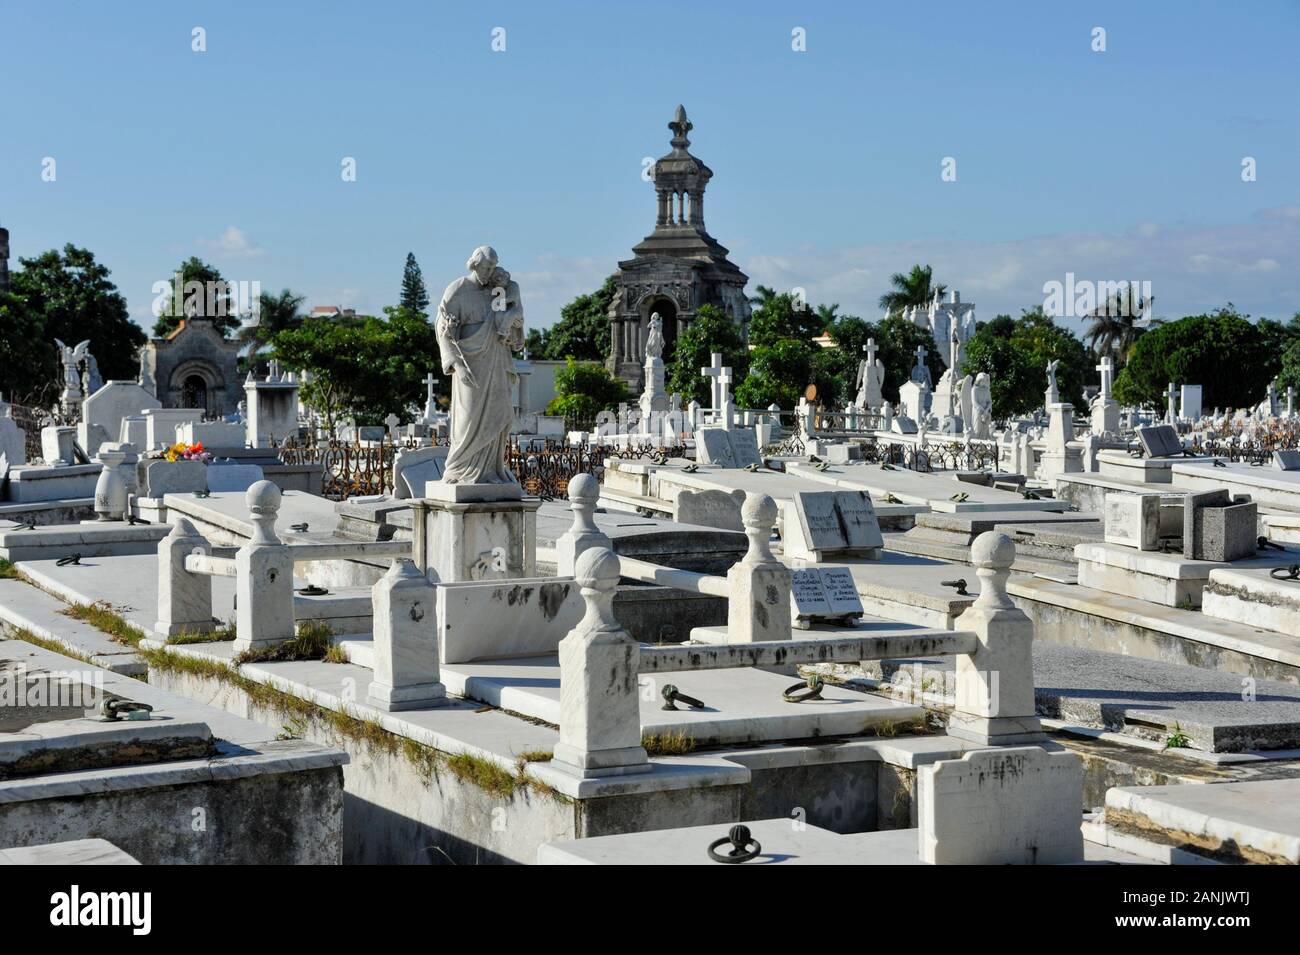 Havanna, Friedhof Cristobal Colon. Blick über das Gräberfeld. Die Tadt der Toten". Friedhof Cristobal Colon, La Habana, Kuba | Friedhof Cristobal Colon, Stockfoto